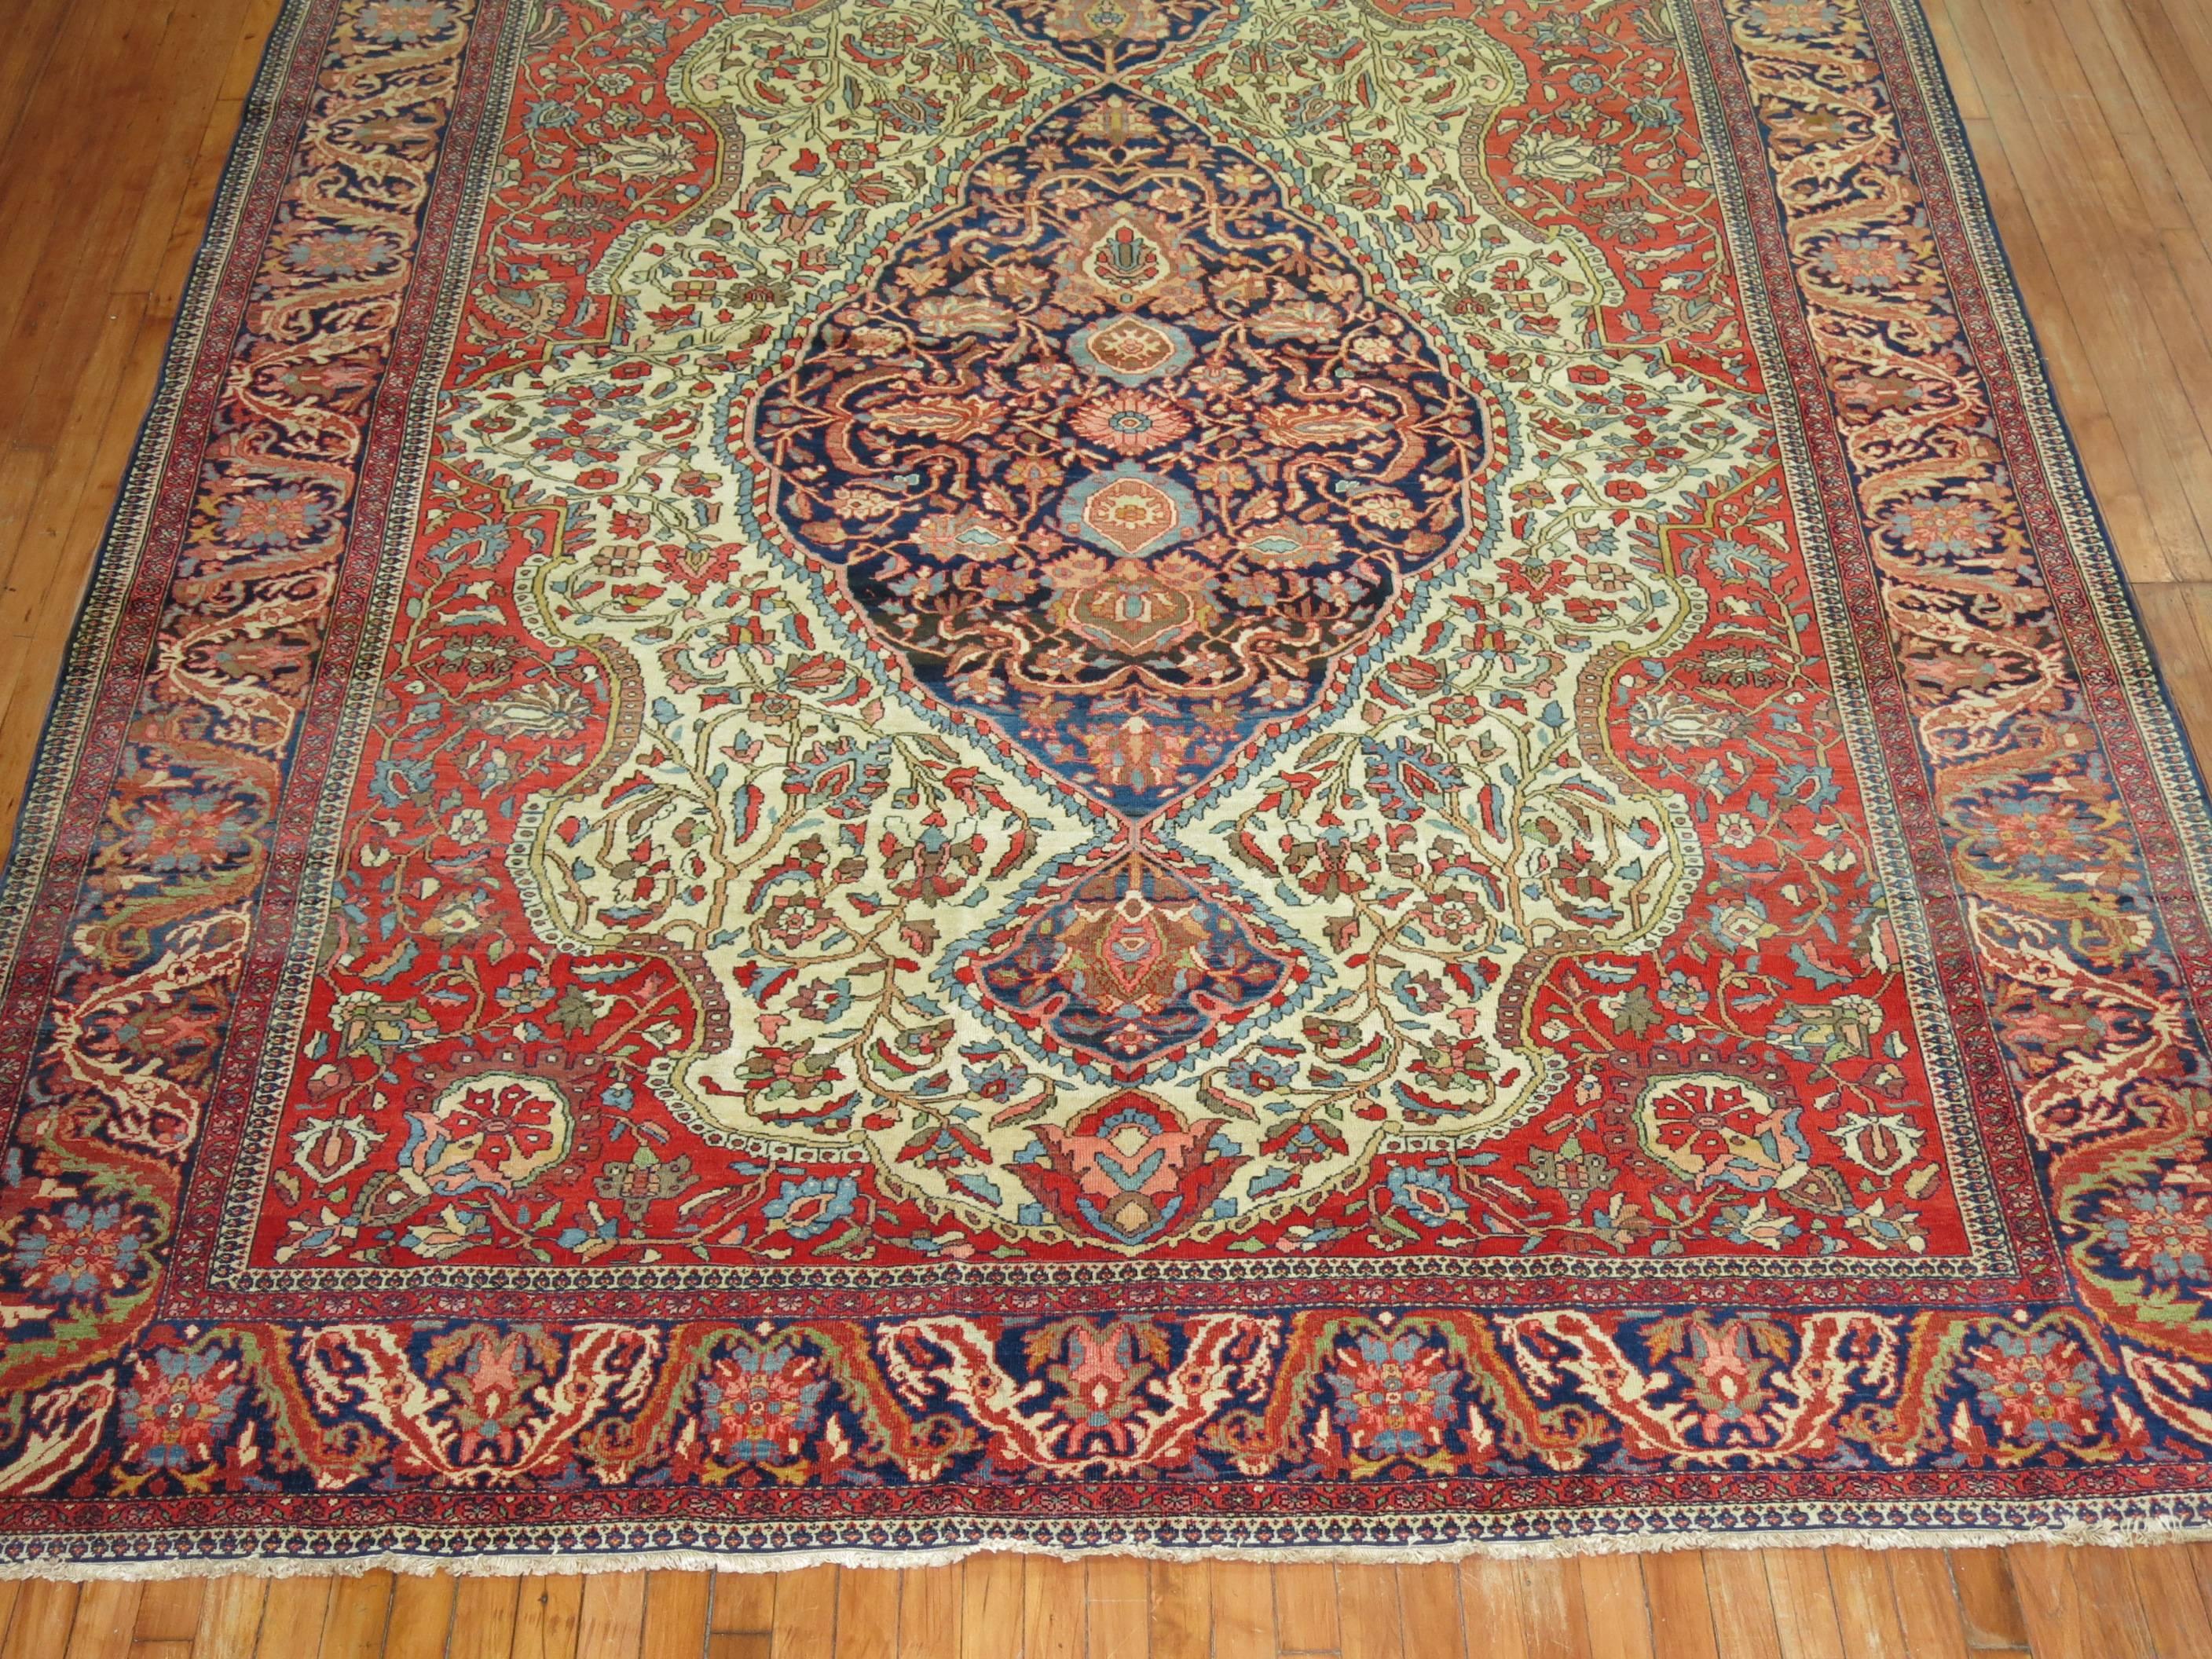 Authentique tapis sarouk Ferahan du début du XXe siècle, avec un motif classique de médaillon et de bordure. 

Les tapis Ferahan de niveau d'investissement n'ont pas été produits après les années 1910, et les plus beaux exemples du XIXe et du